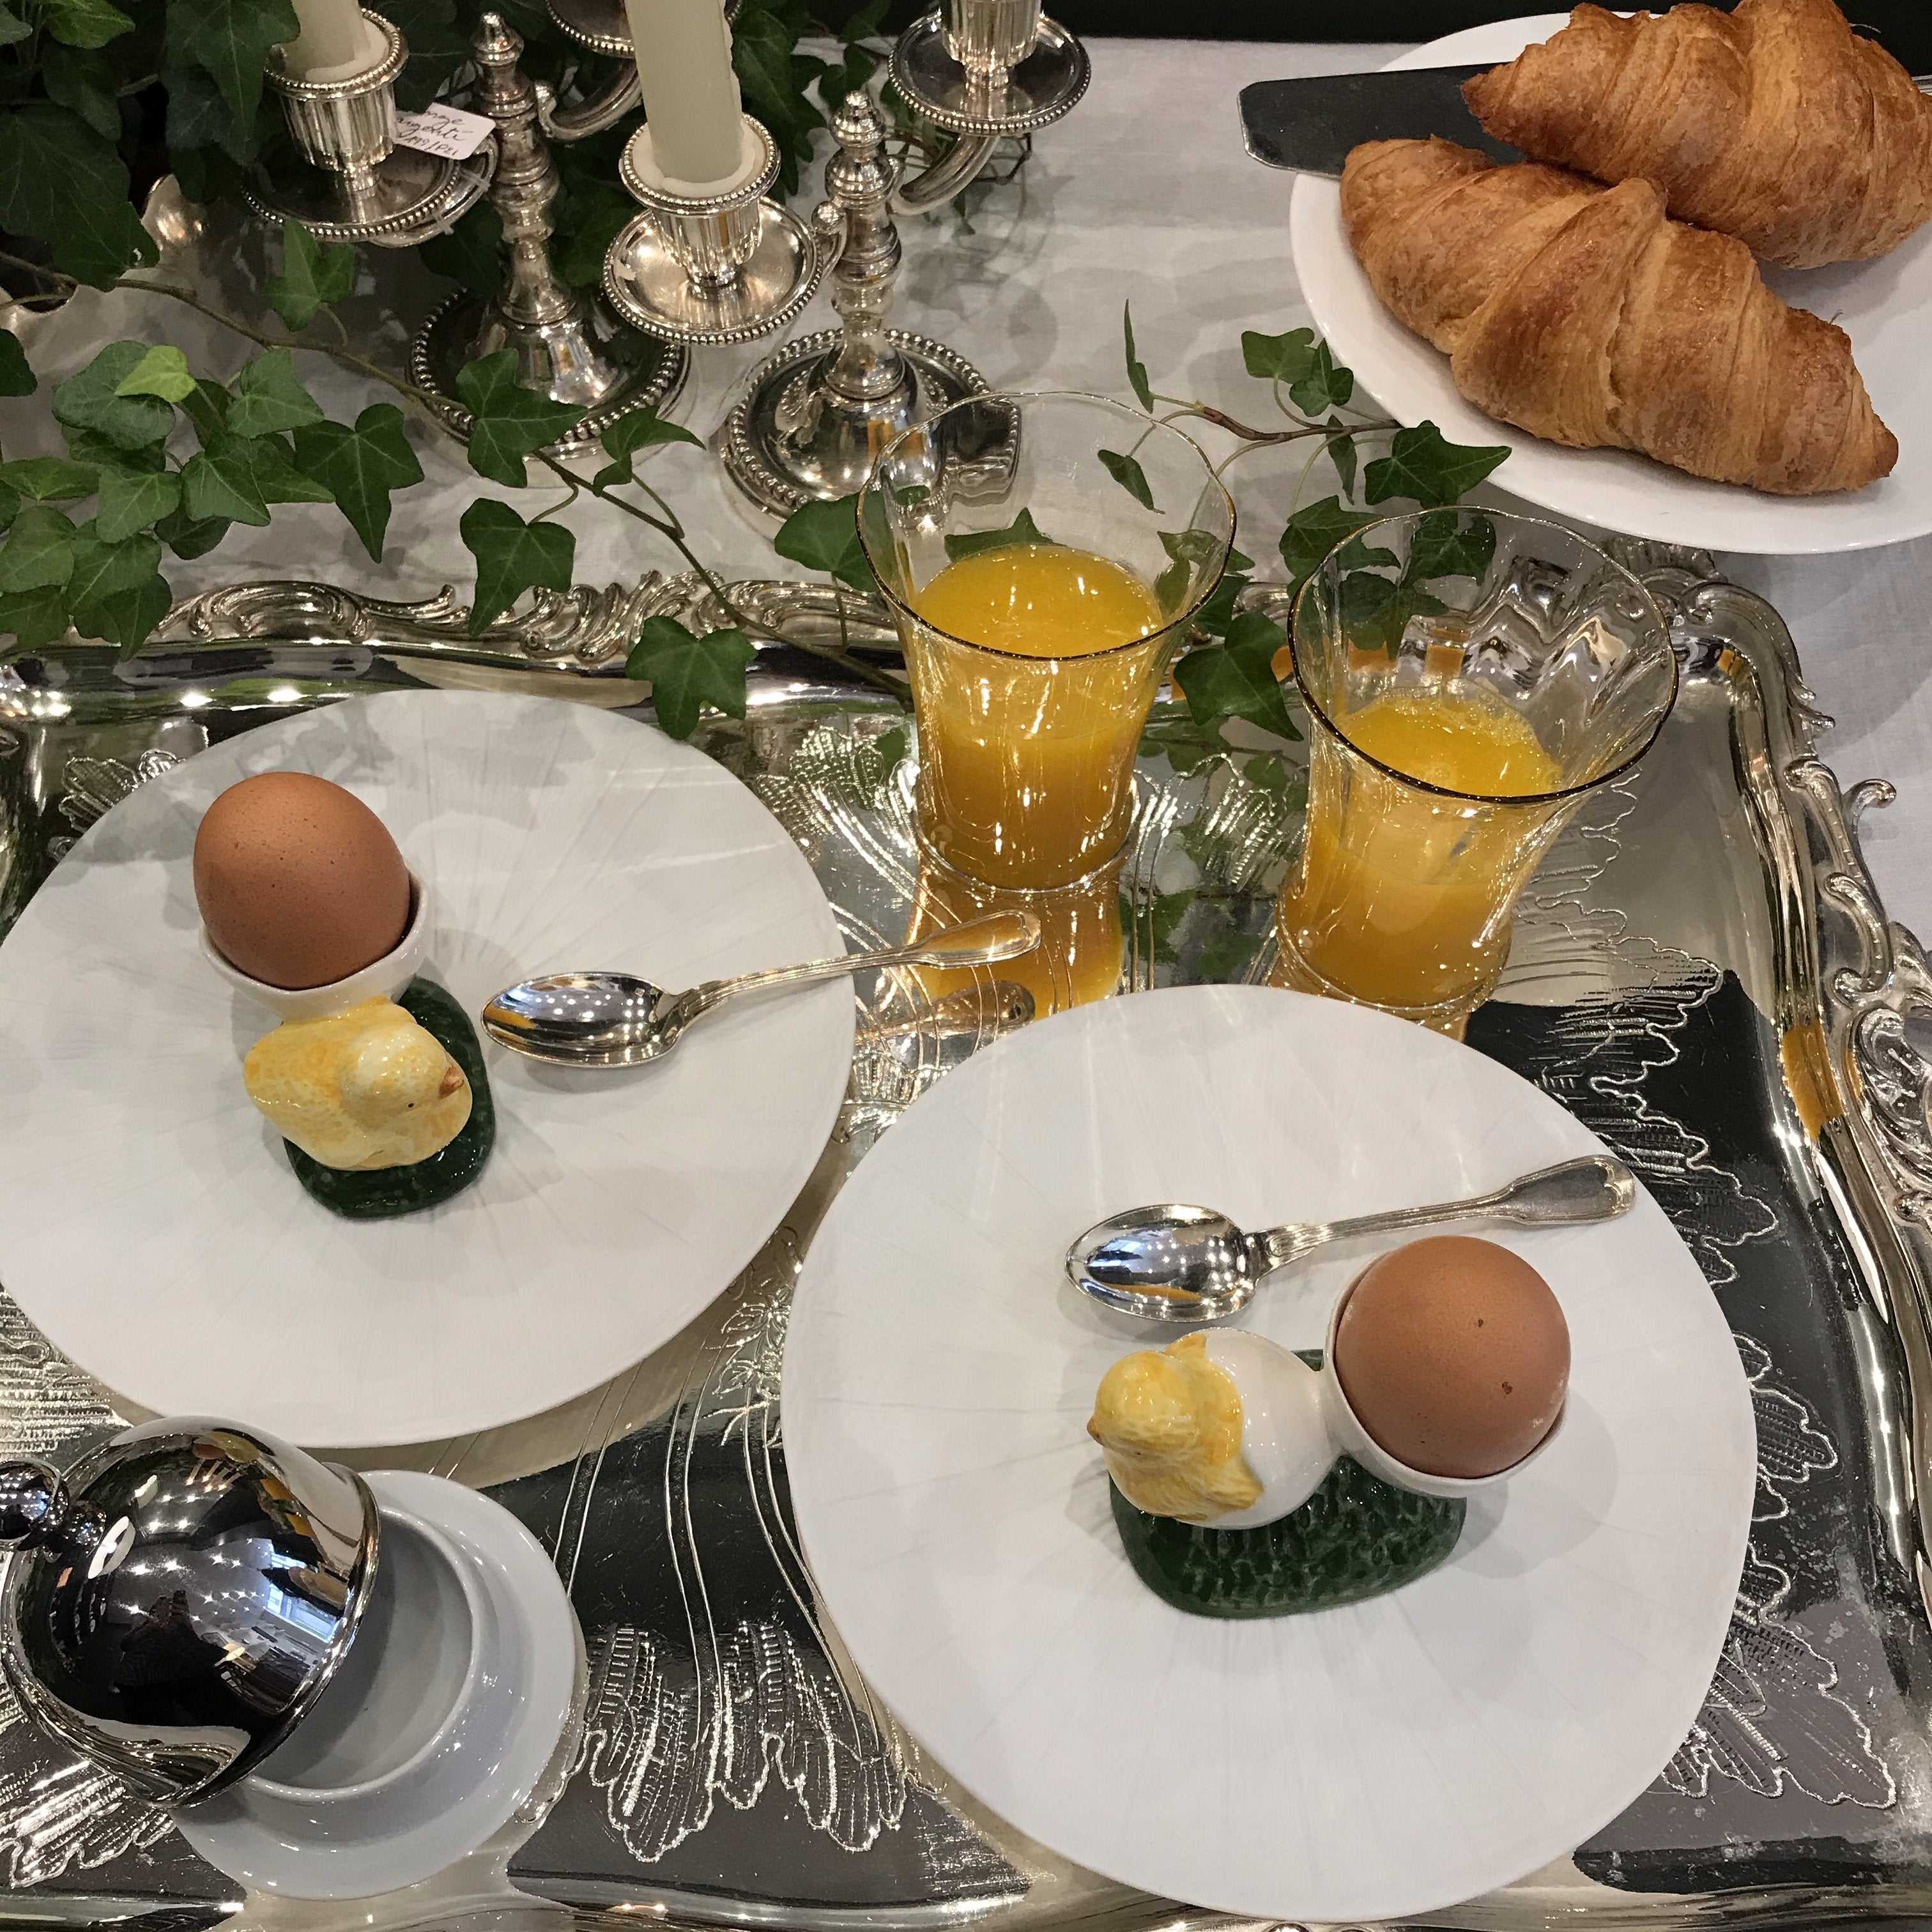 Petot dejeuner français french breakfast coquetier poussin